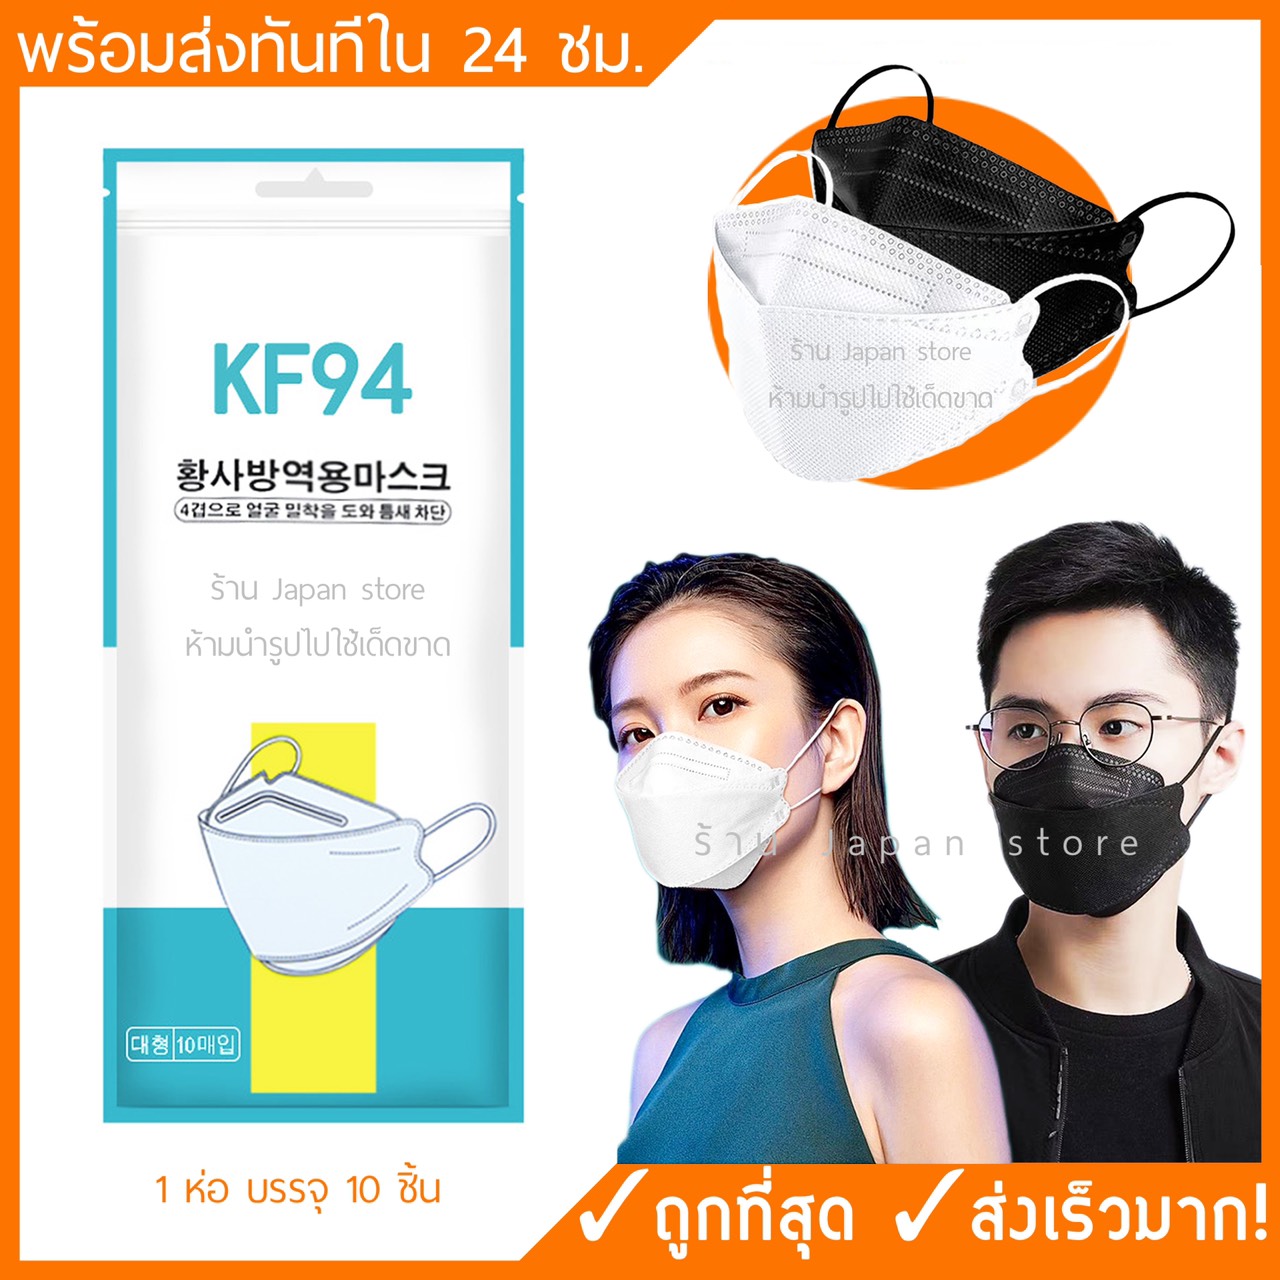 หน้ากากอนามัยเกาหลี  KF94 แมส 3D mask แพค 10 ชิ้น หน้ากากกันฝุ่น pm 2.5 หน้ากากอานามัยหน้า กากอนามัยผู้ใหญ่ แมสสีดำ หน้ากากผ้า ราคาถูก ราคาส่ง